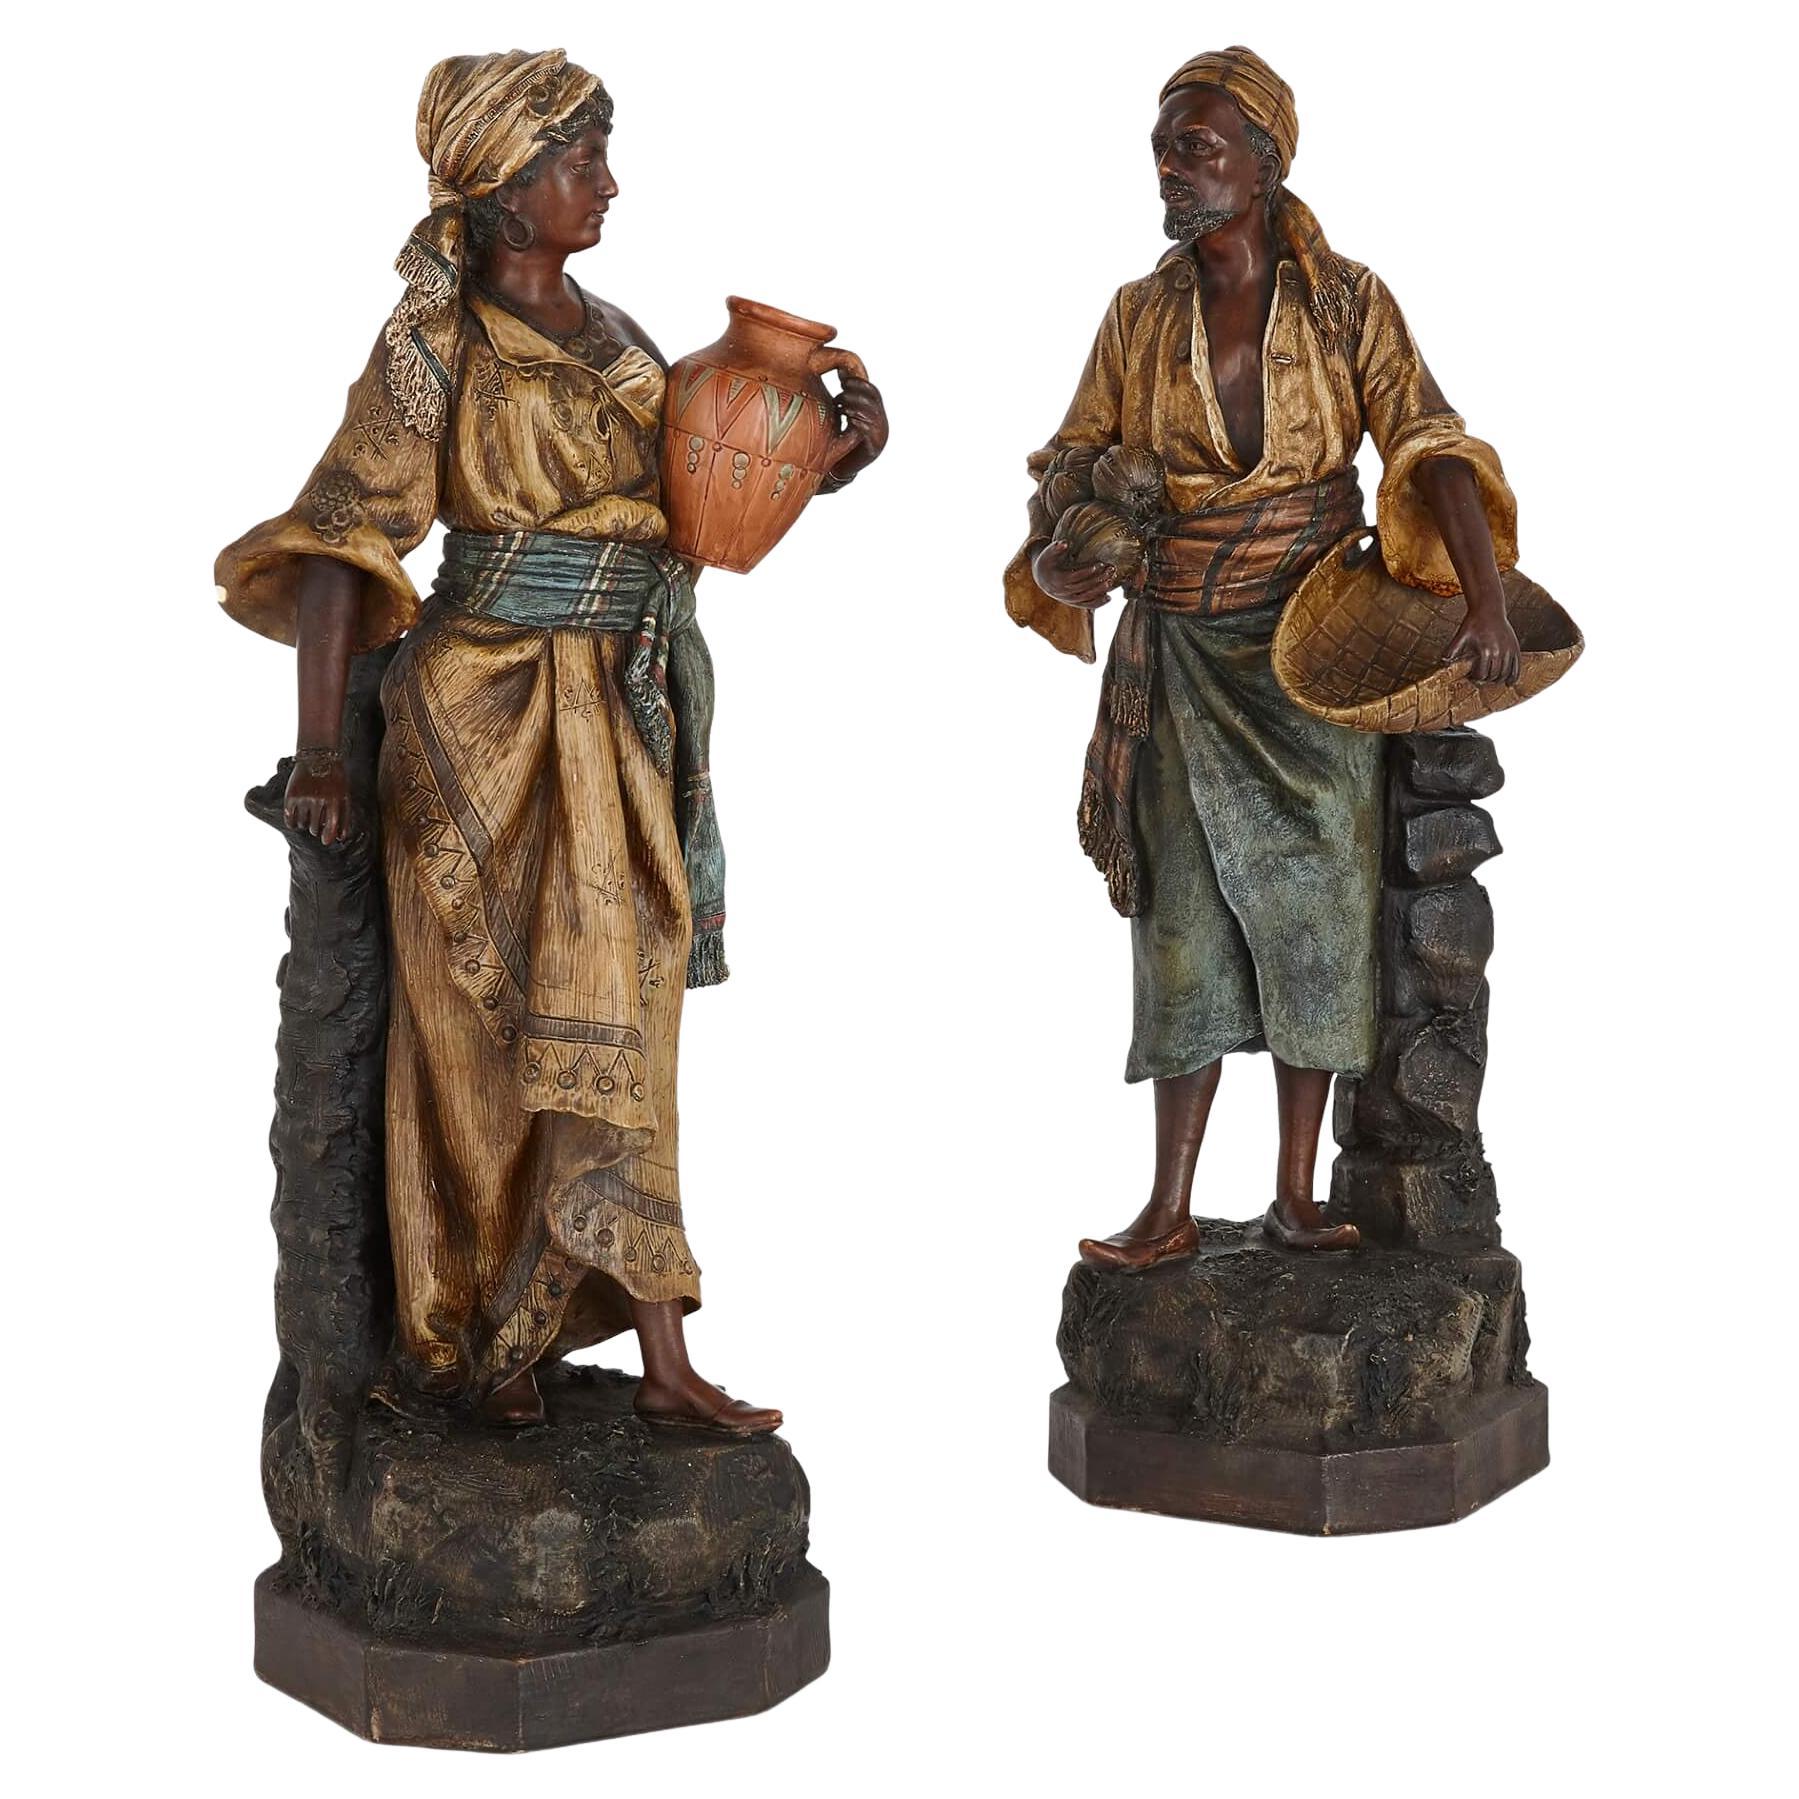 A pair of Orientalist terracotta figures by Johann Maresch